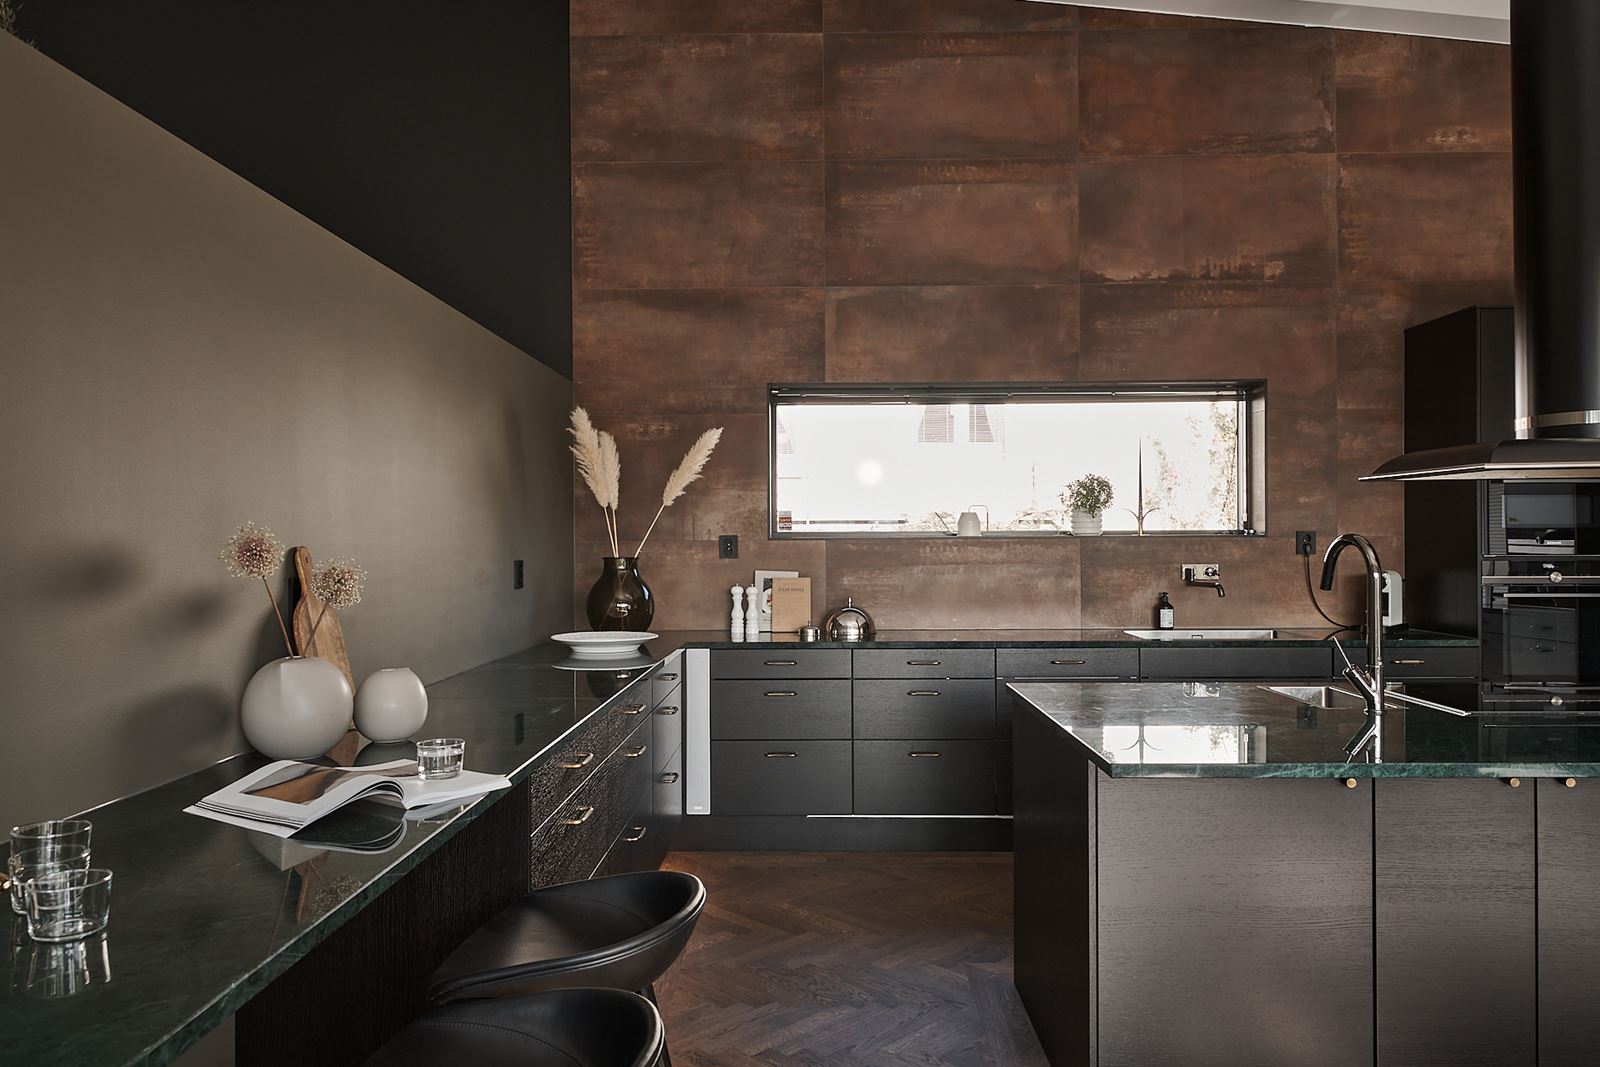 Interiör av ett modernt kök i en bostad att sälja med mäklare från Bjurfors